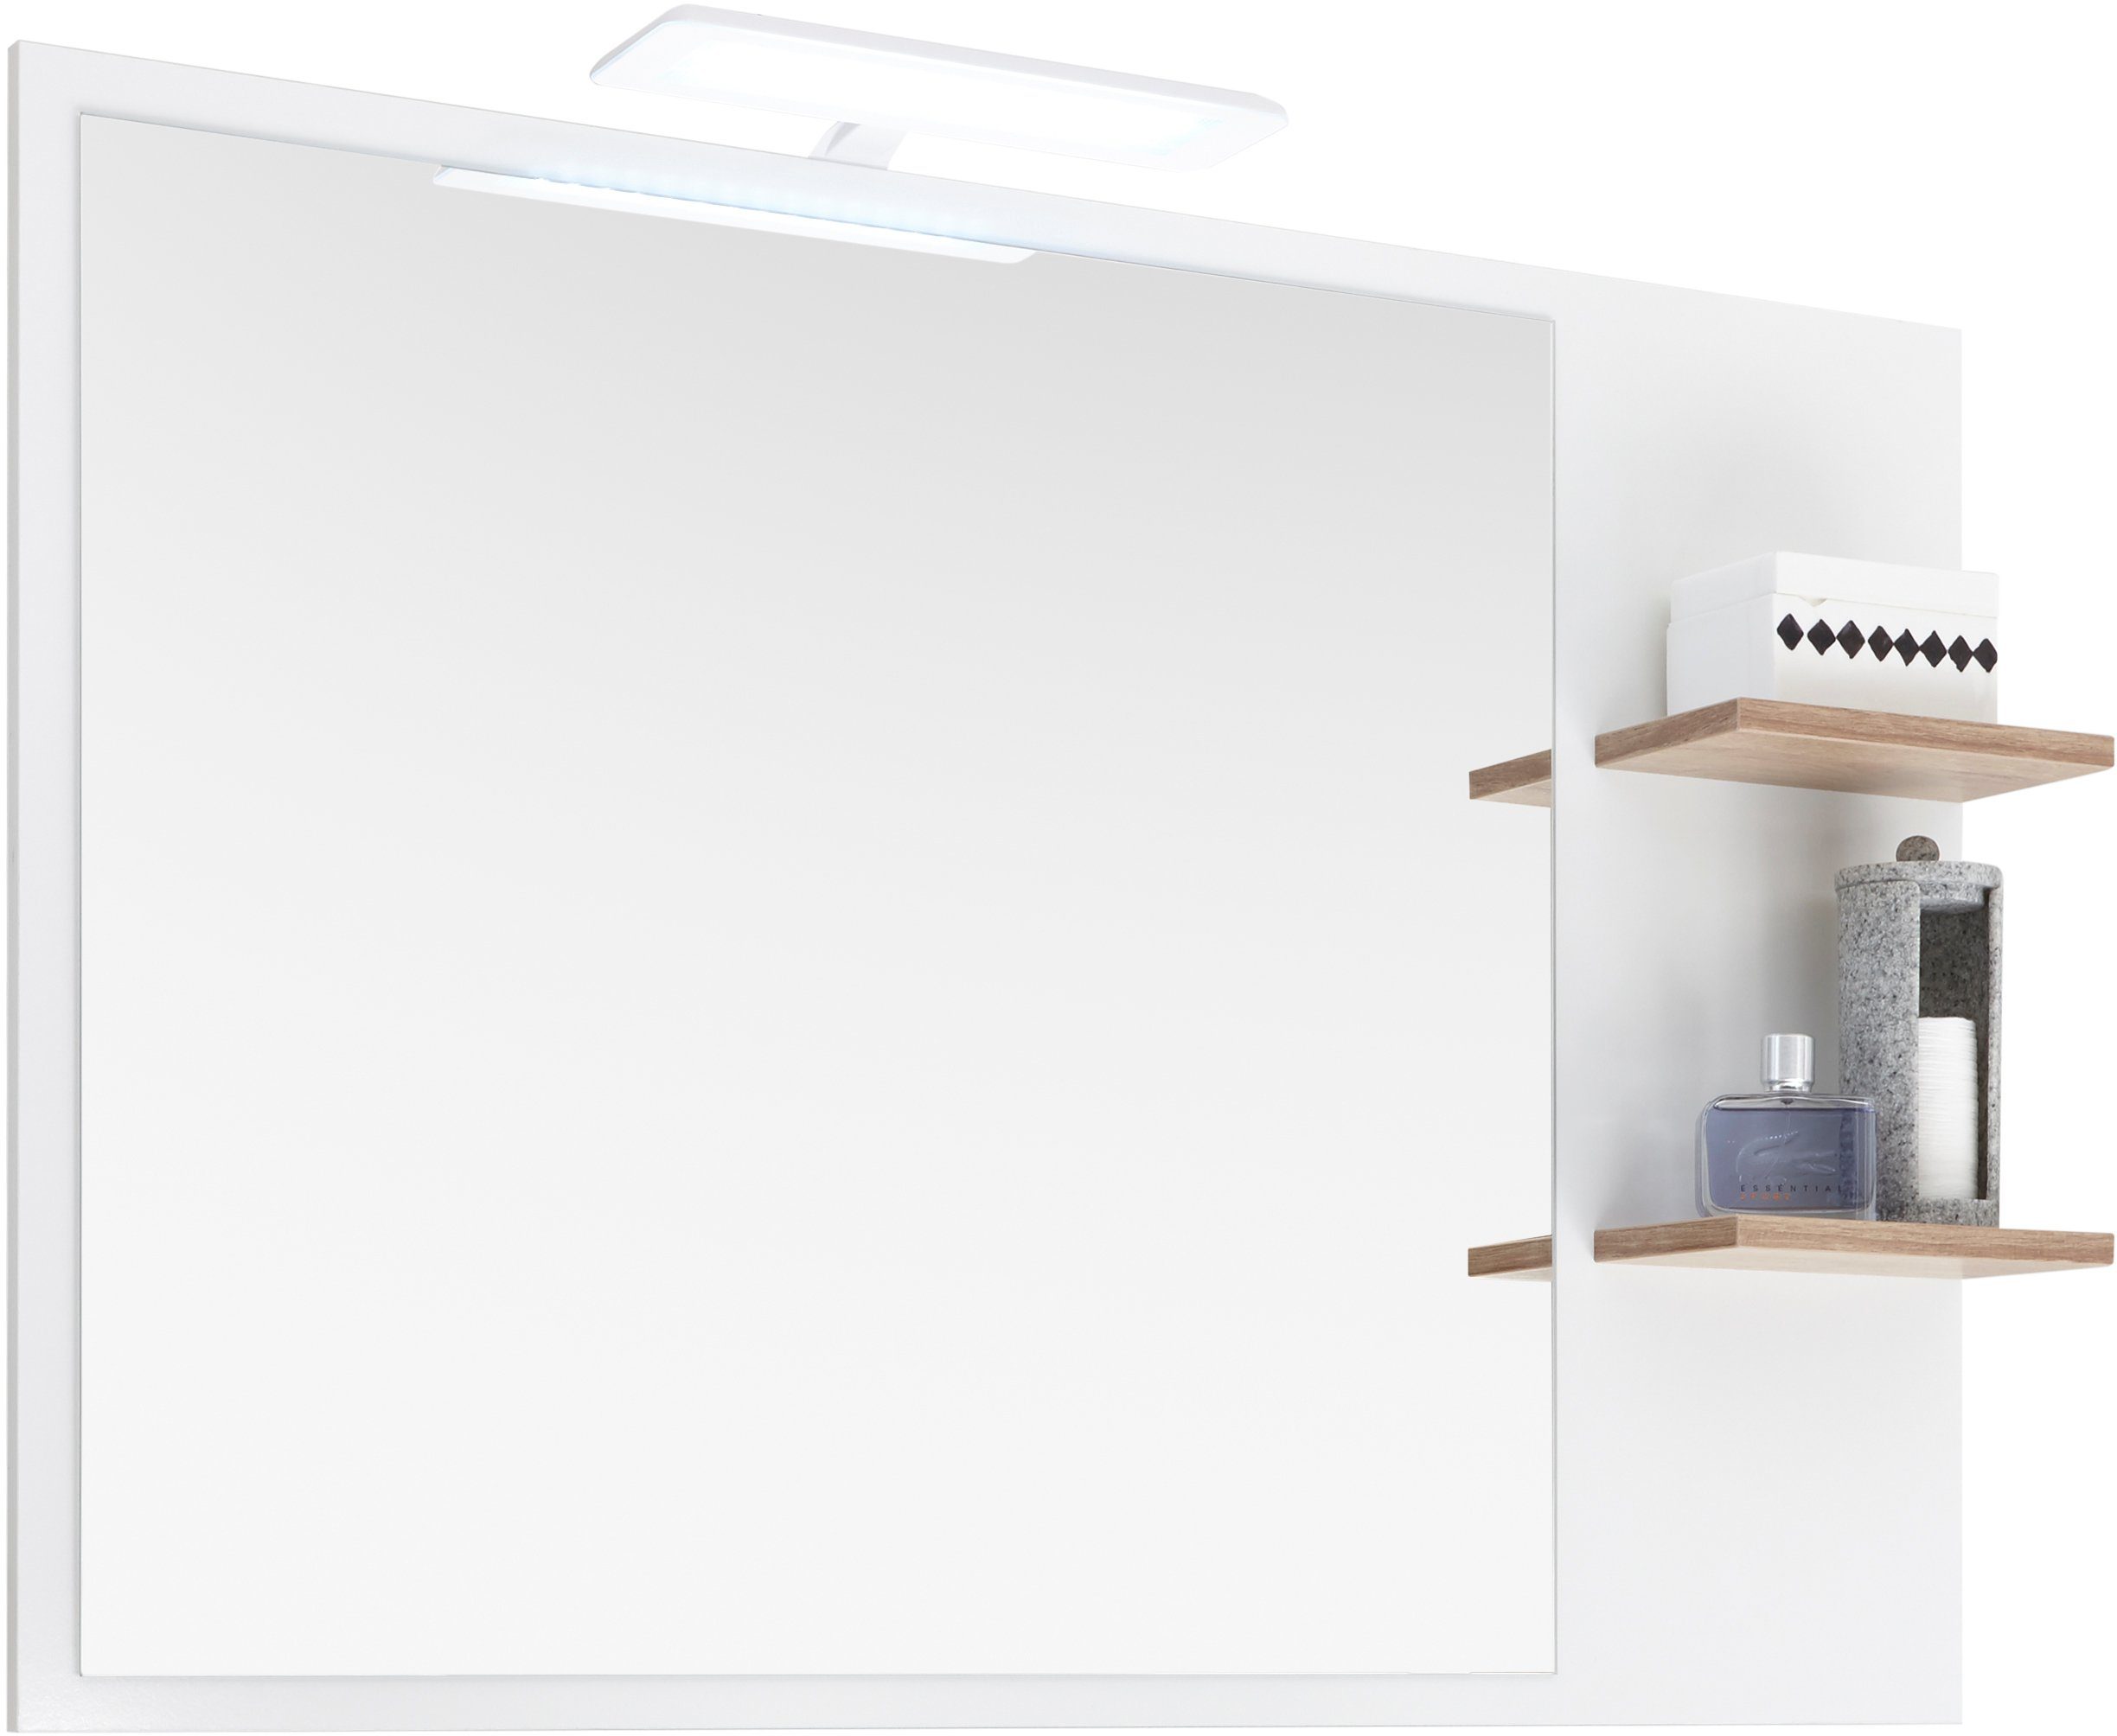 Breite Lichtfarbe Quickset LED weiß PELIPAL Aufbauleuchte 923, Spiegelleuchte fest integriert, kaltweiß, Kaltweiß, cm, 30 LED